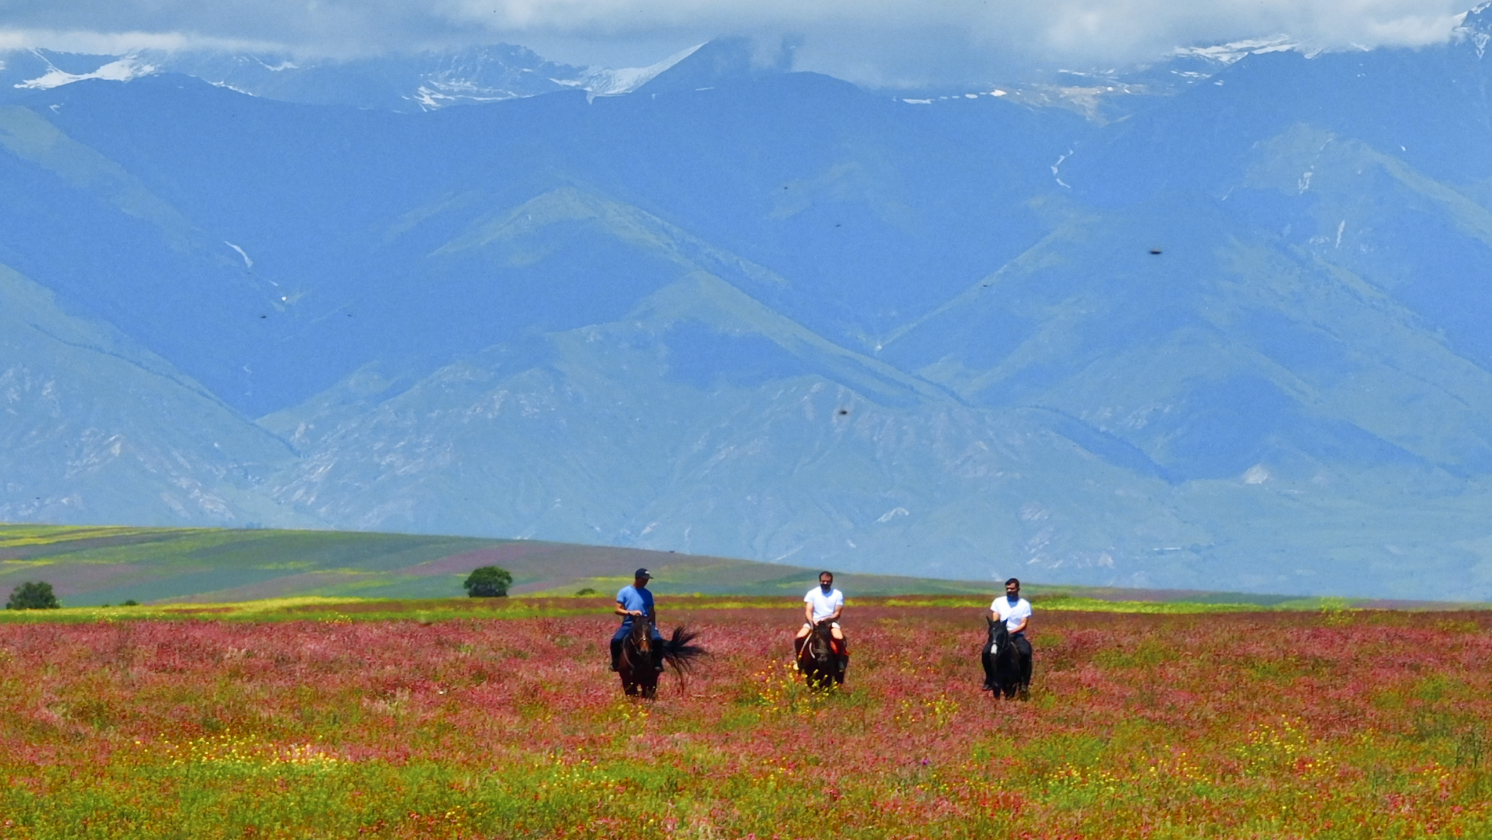 the mountains of Kyrgyzstan